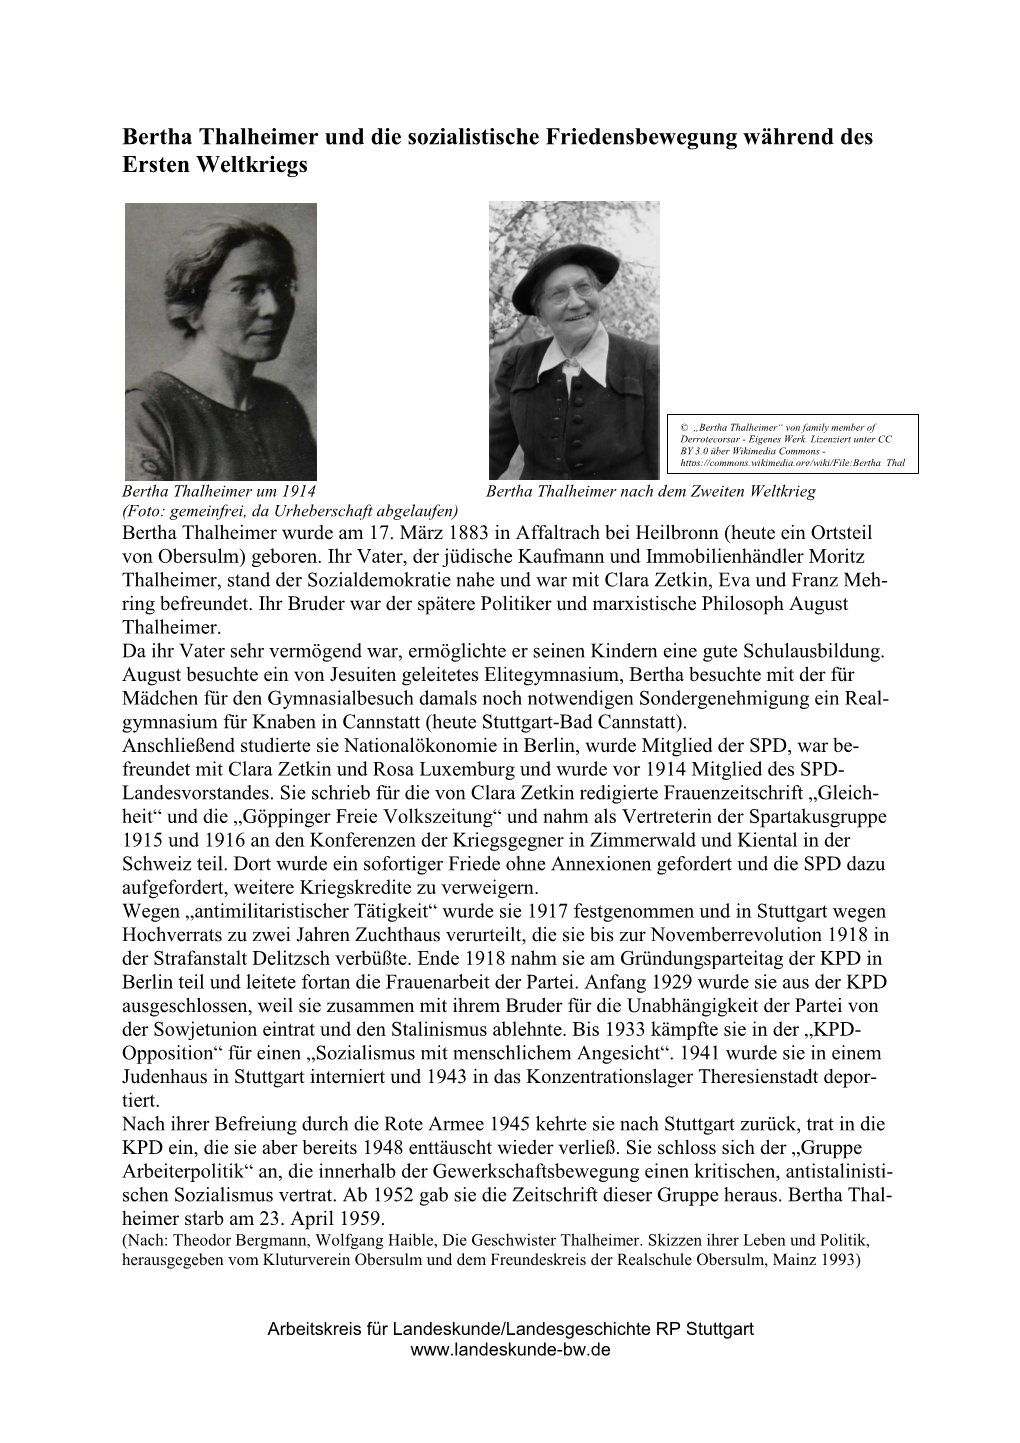 Bertha Thalheimer Und Die Sozialistische Friedensbewegung Während Des Ersten Weltkriegs